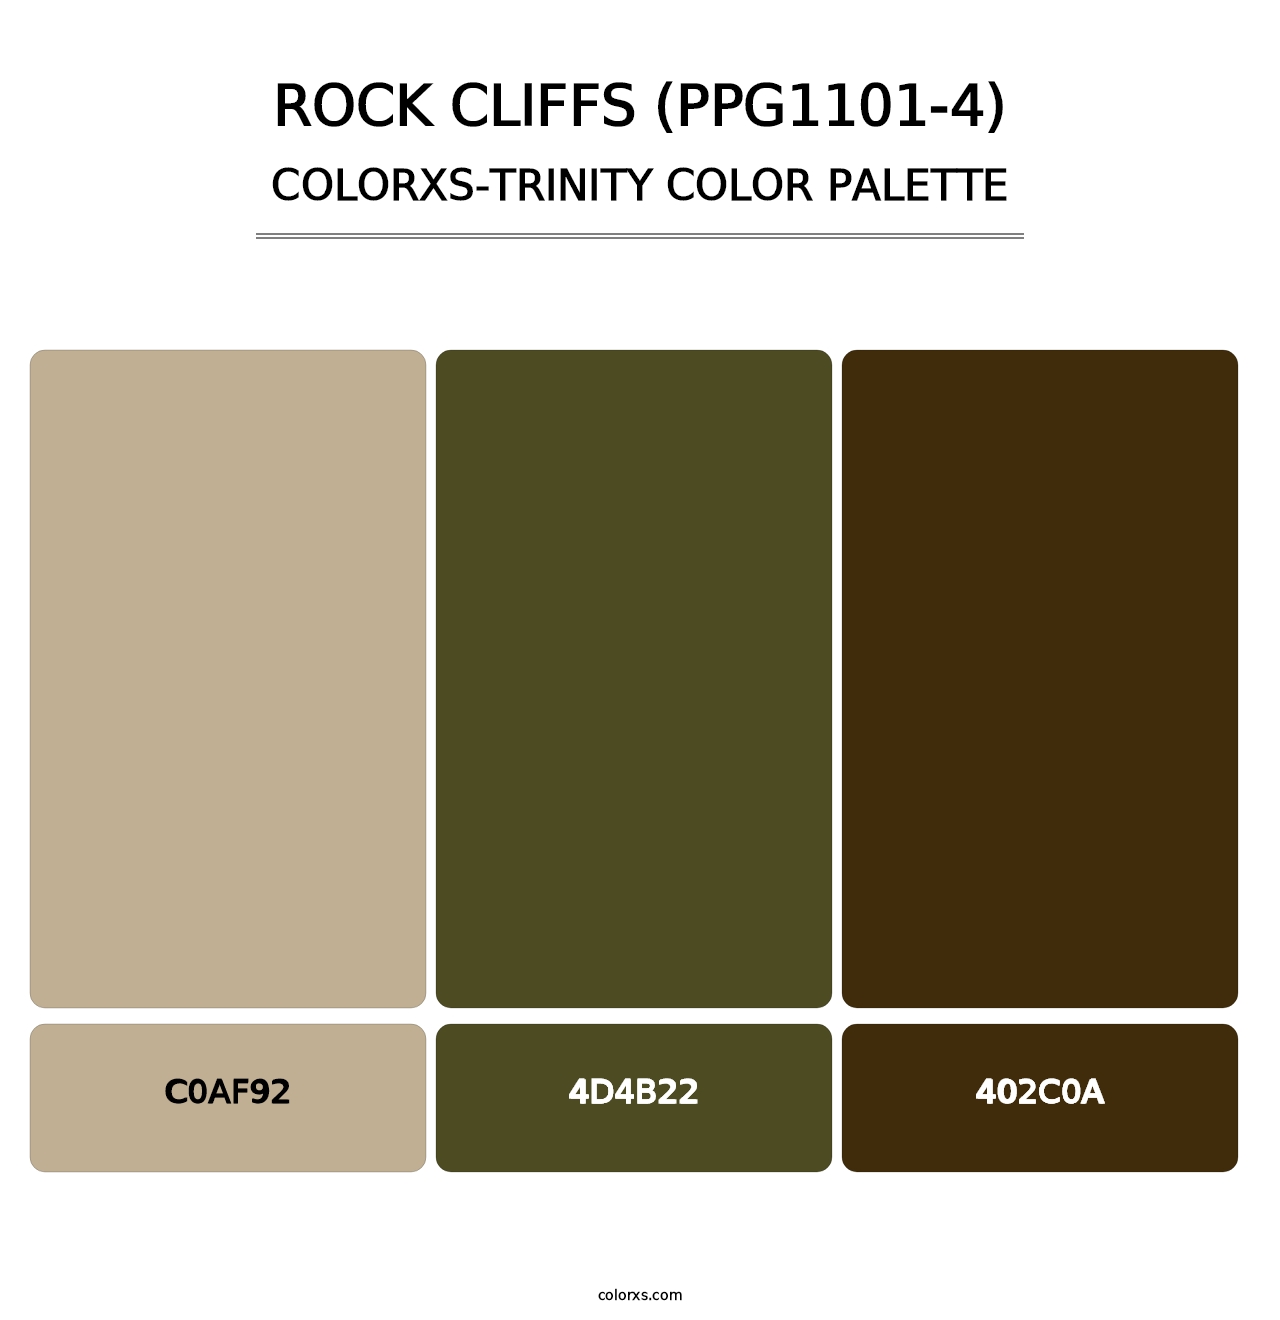 Rock Cliffs (PPG1101-4) - Colorxs Trinity Palette